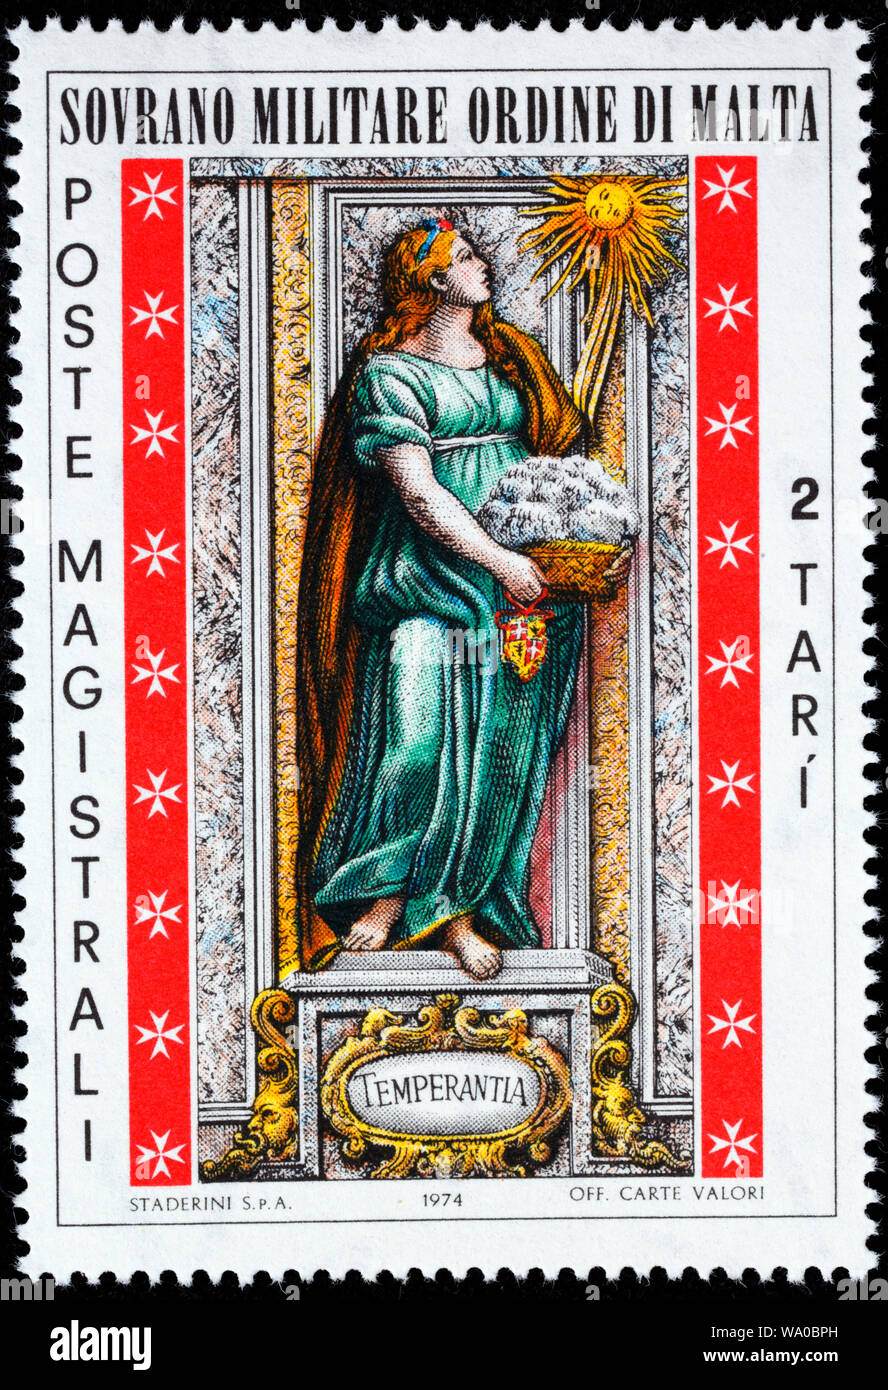 La templanza, virtudes cardinales, sello, Soberana Orden Militar de Malta, 1974 Foto de stock